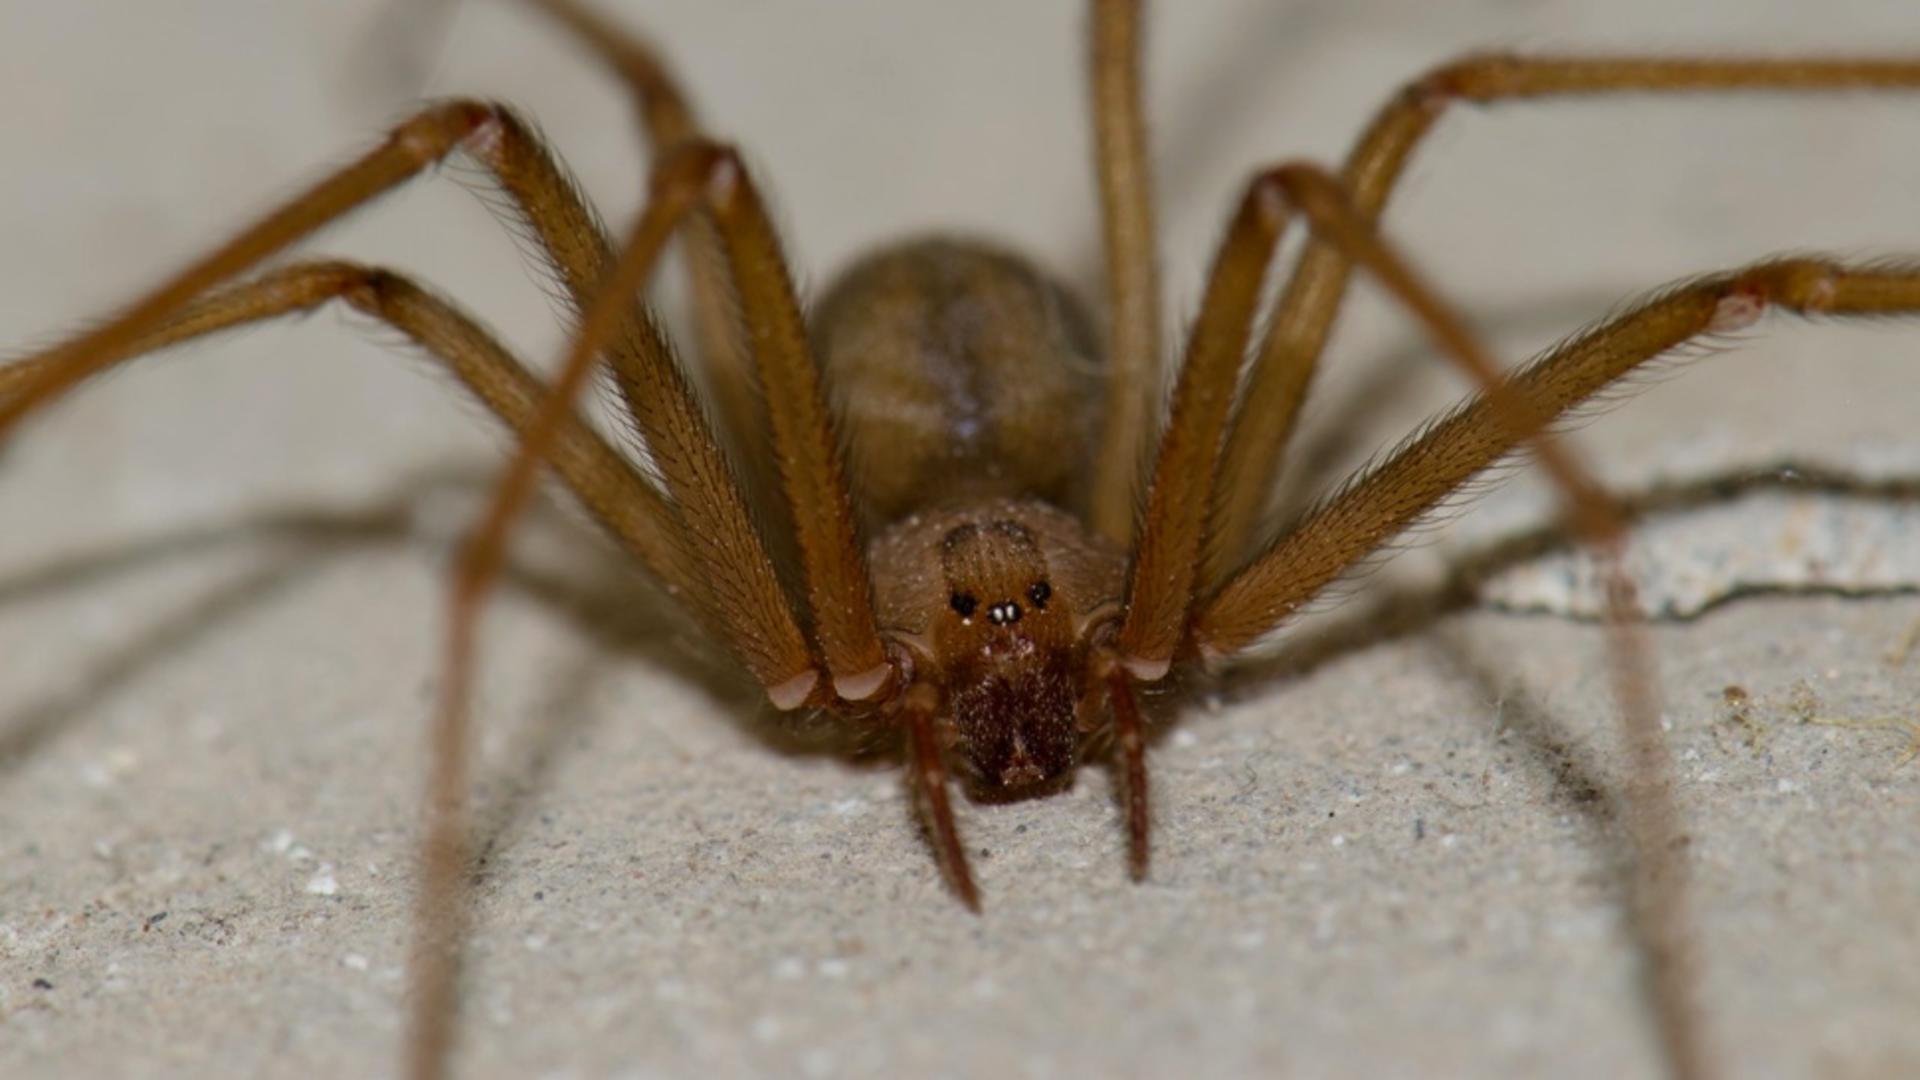 Descoperire de coșmar: Cum a aflat o femeie că găzduia o adevărată colonie de păianjeni veninoși... în ureche - VIDEO